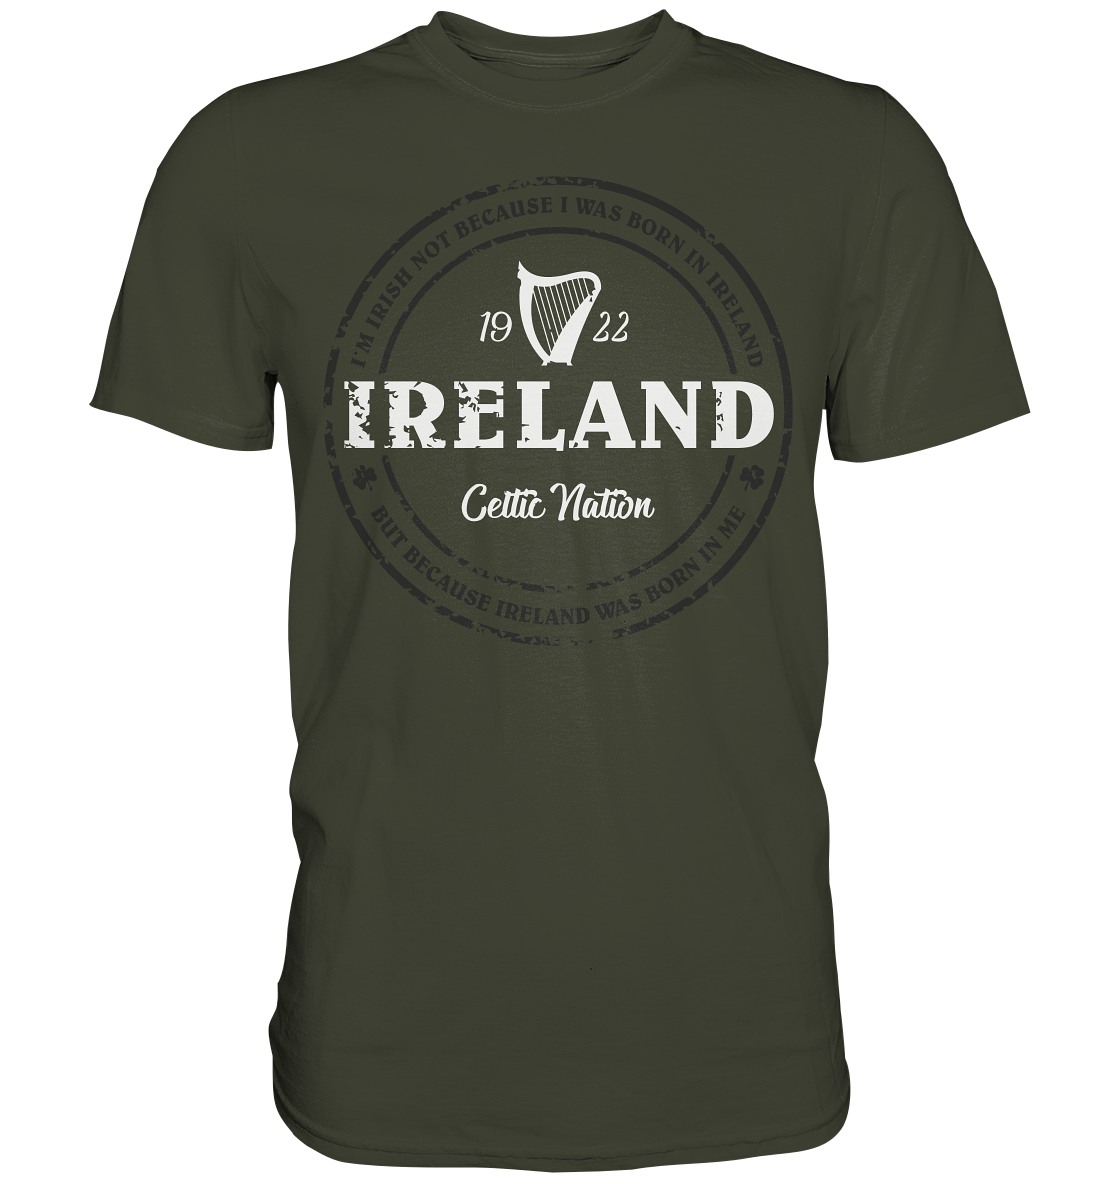 Ireland Was Born In Me - Premium Shirt